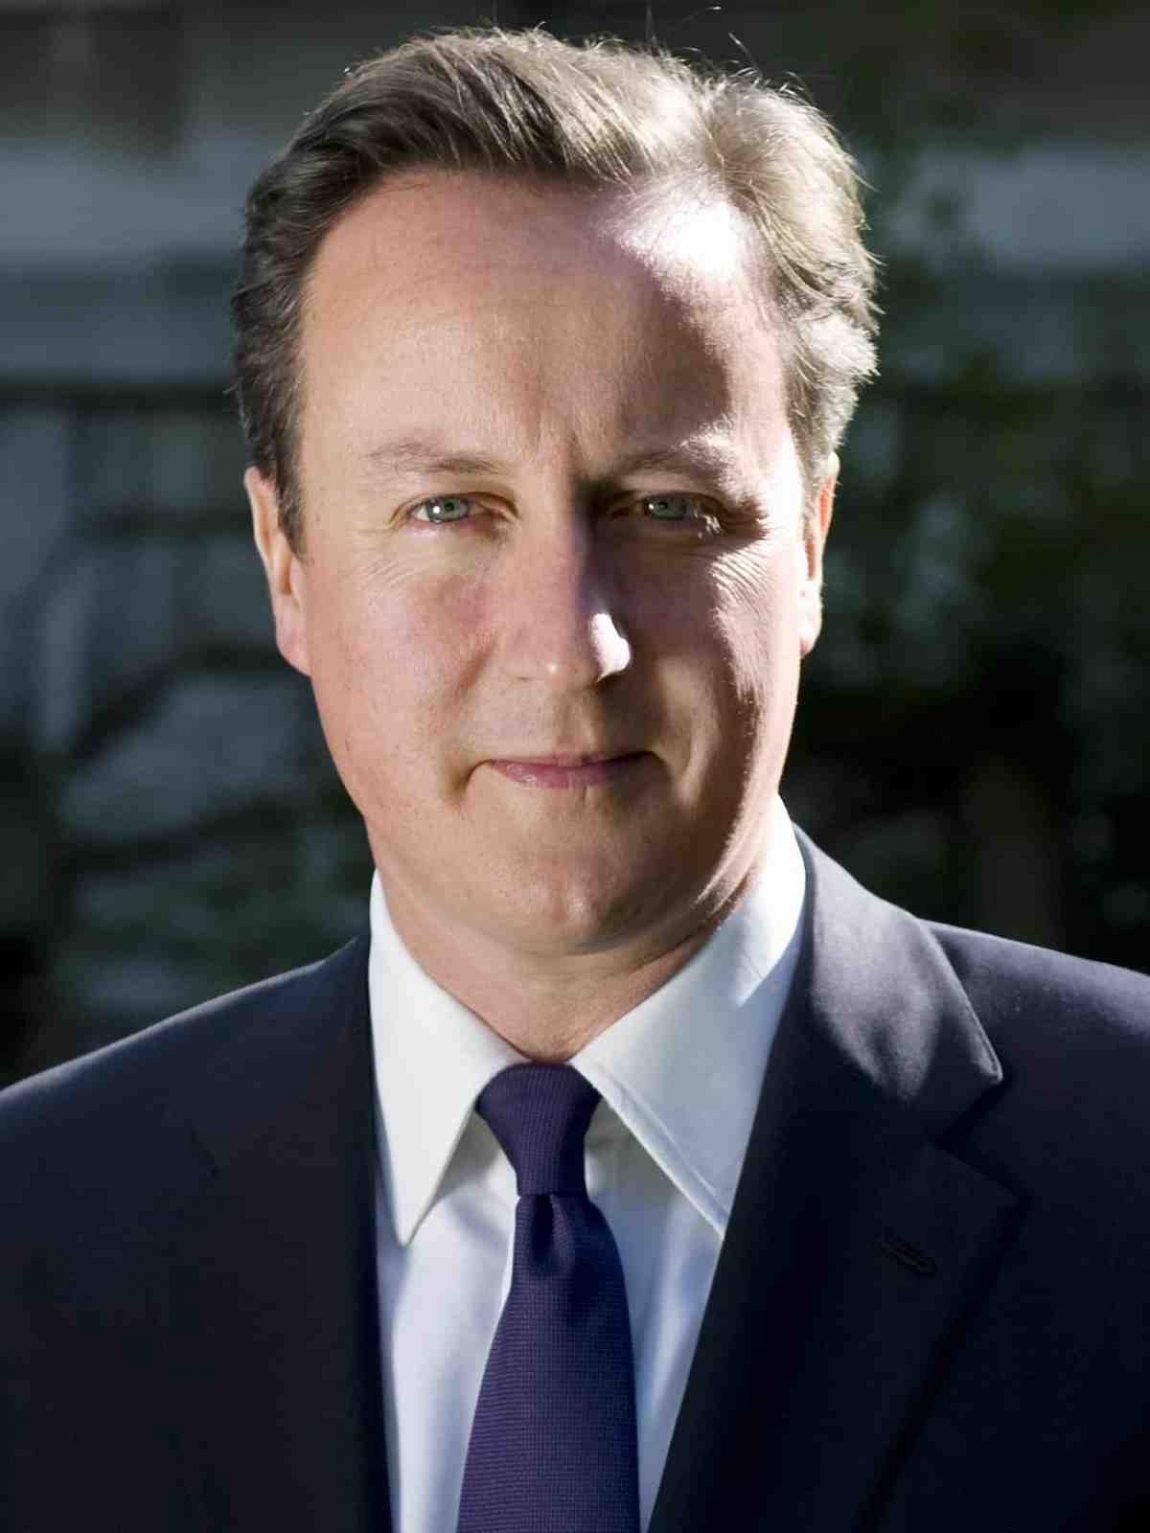 David Cameron official